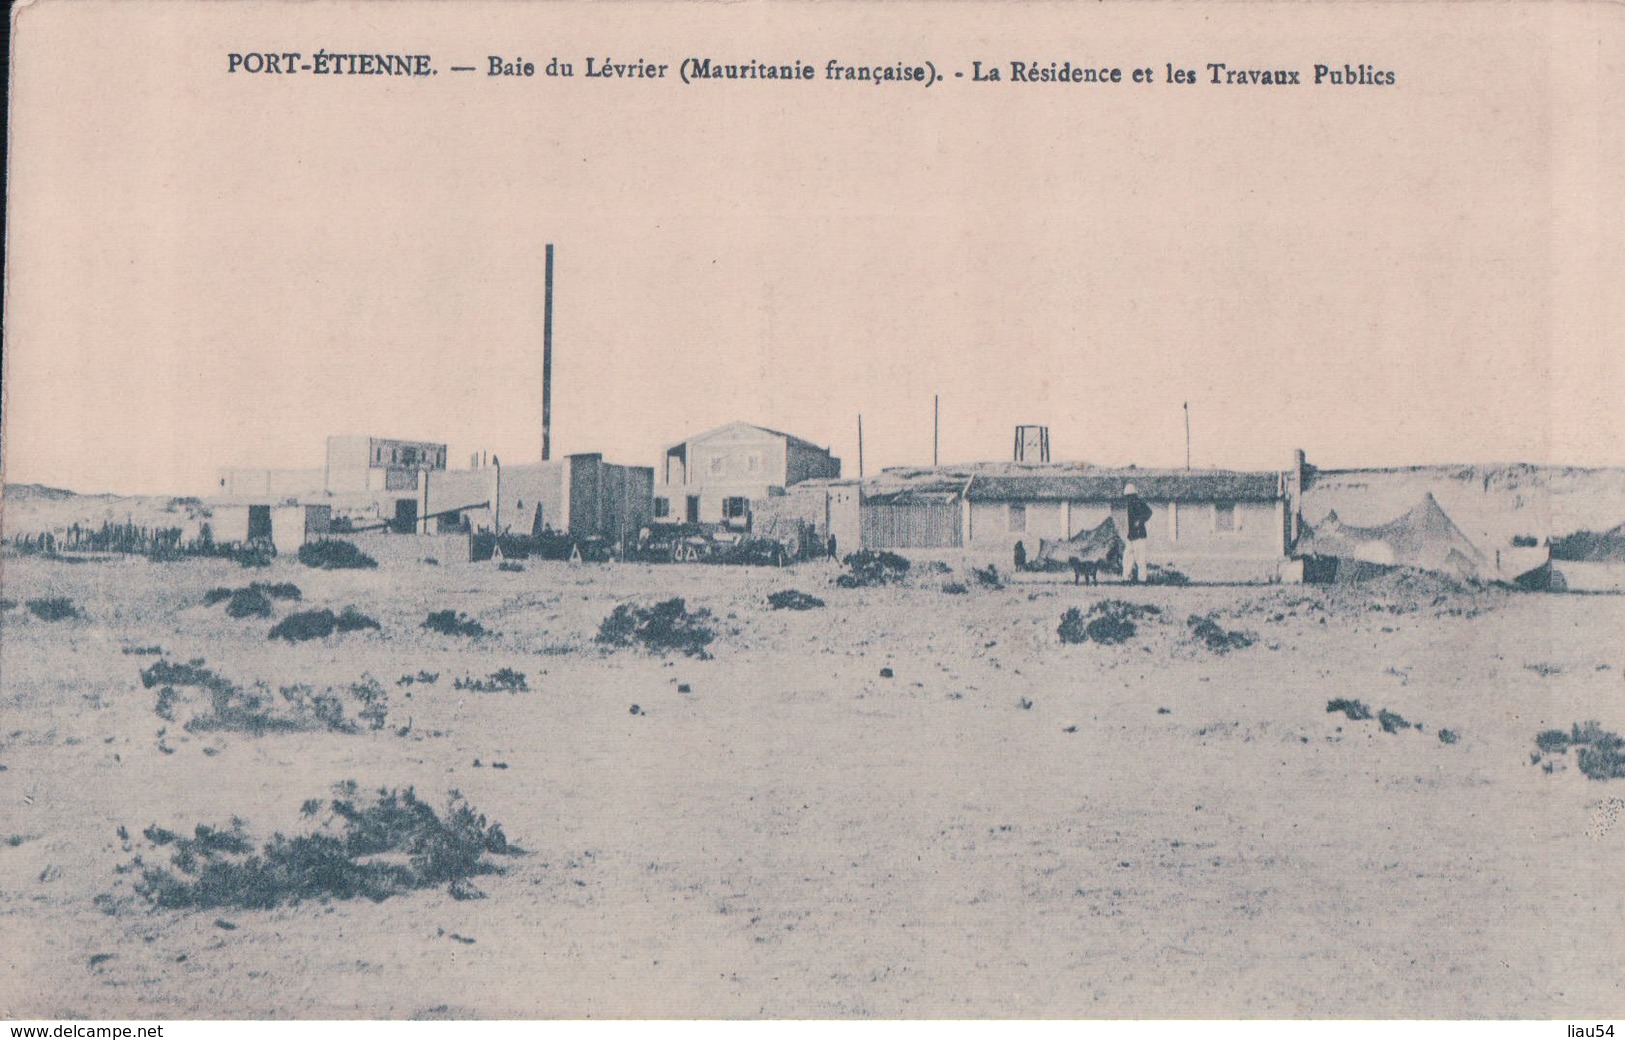 PORT-ETIENNE Baie Du Lévrier La Résidence Et Les Travaux Publics - Mauritanie